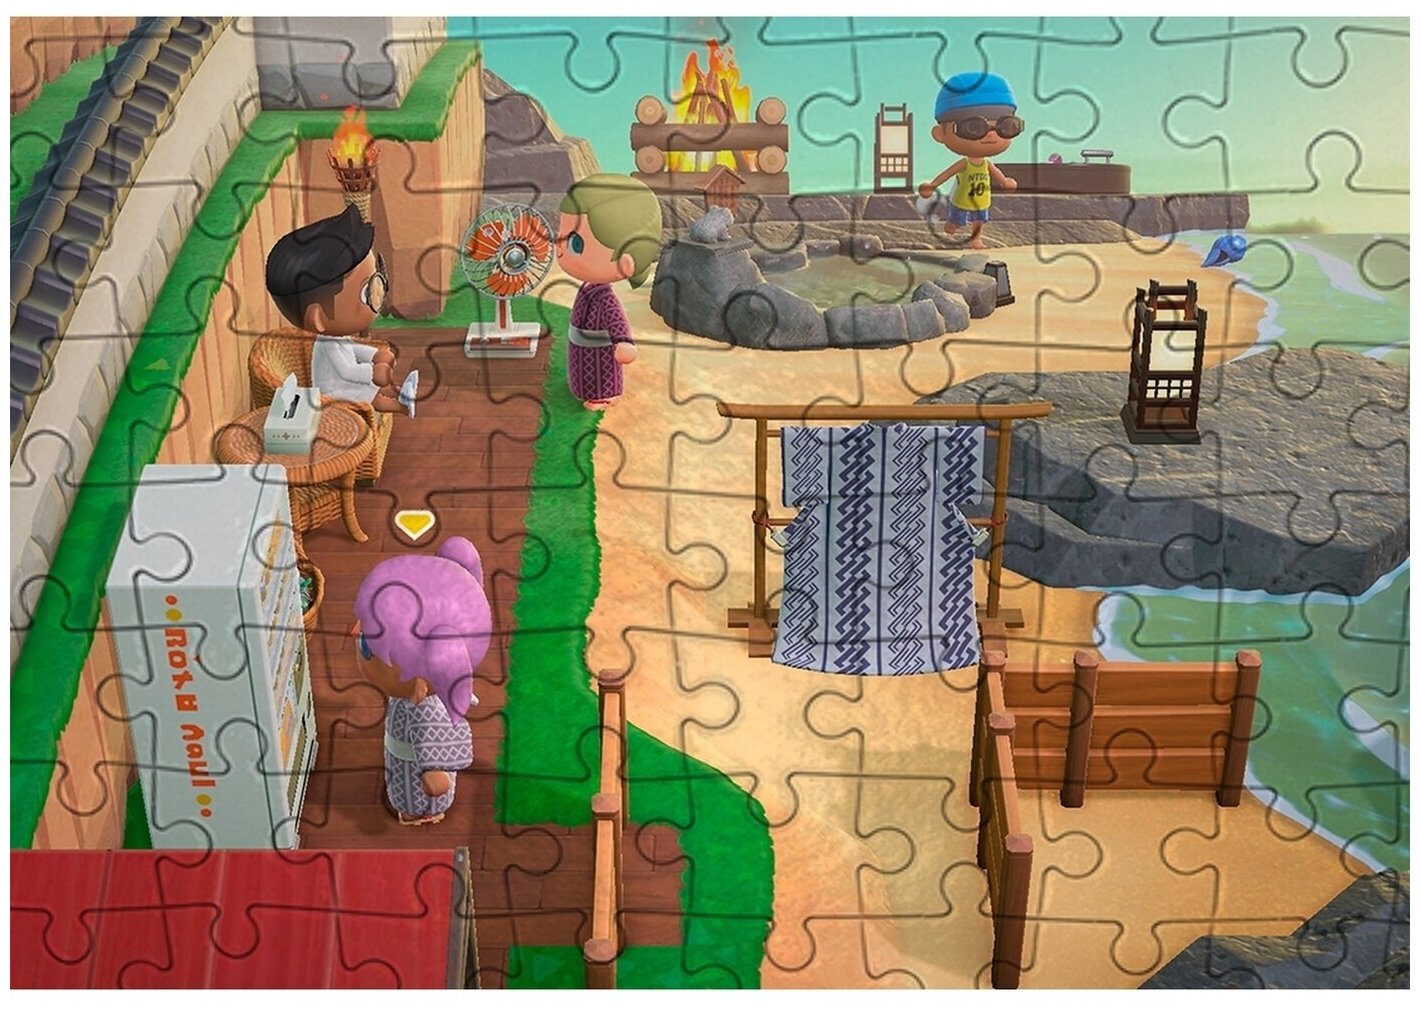 Пазл Картонный 38x26 см размер А3 300 деталей модель Animal Crossing New Horizons - 40